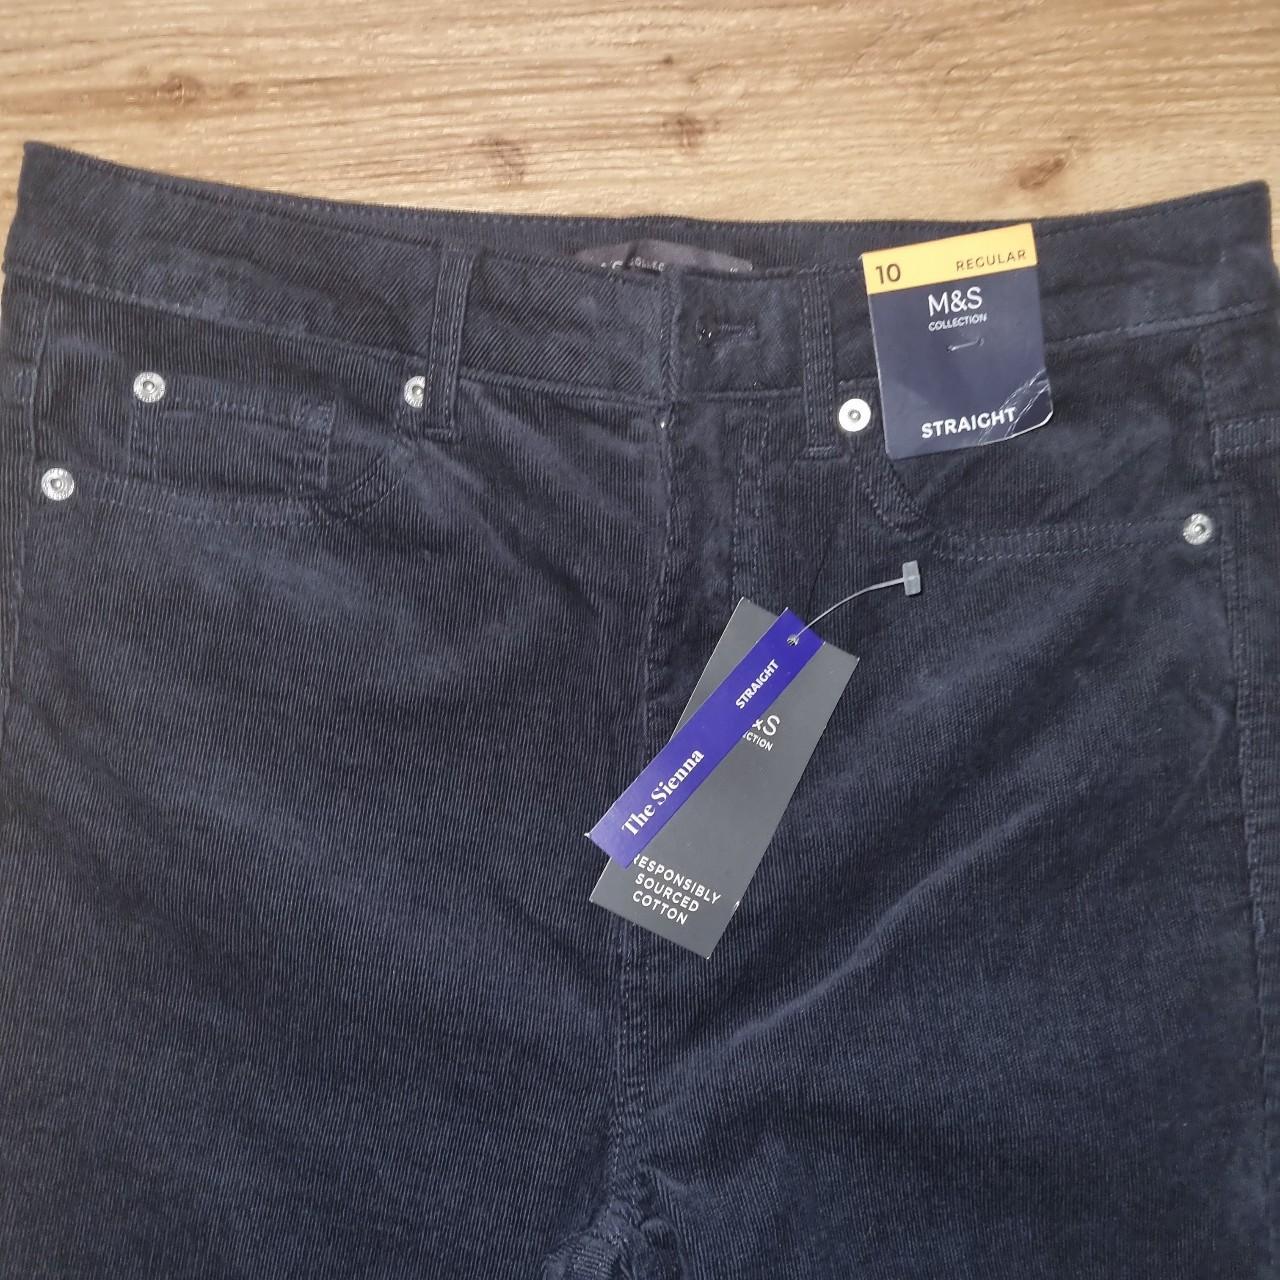 Brand new Marks & Spencer straight leg cord jeans... - Depop